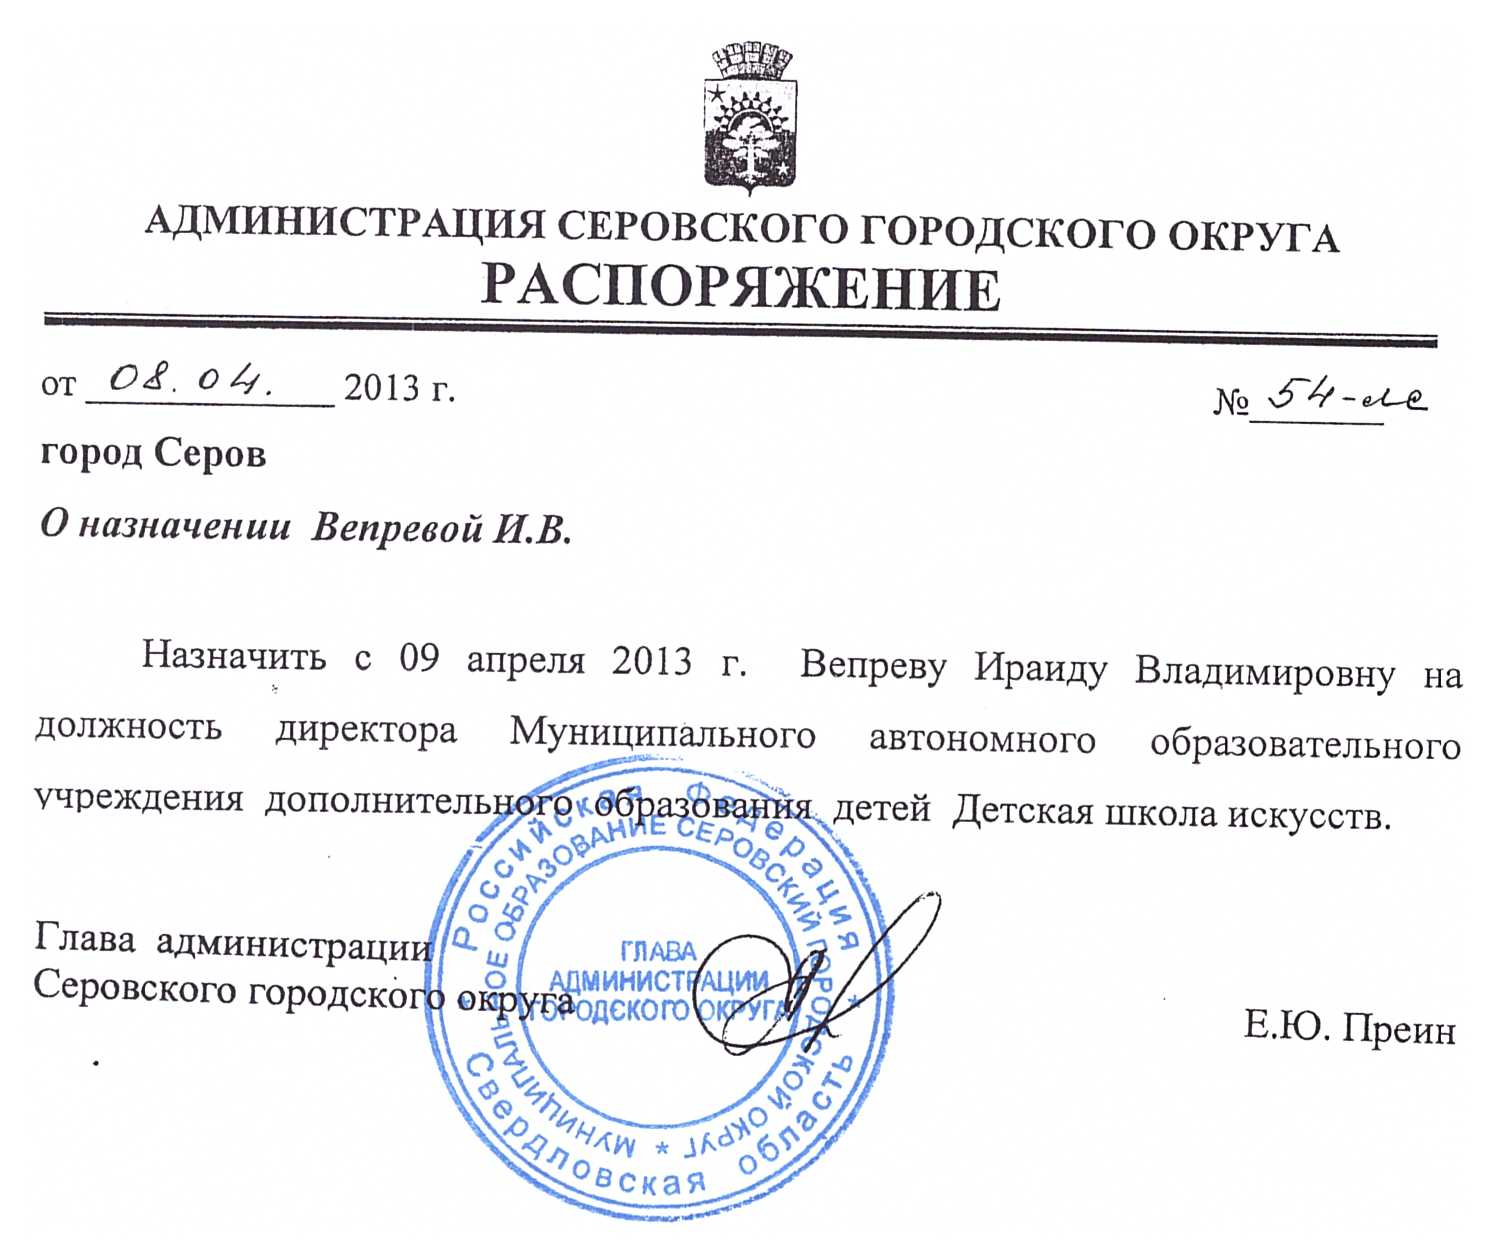 Распоряжение о назначении директора МАОУ ДОД ДШИ г. Серова